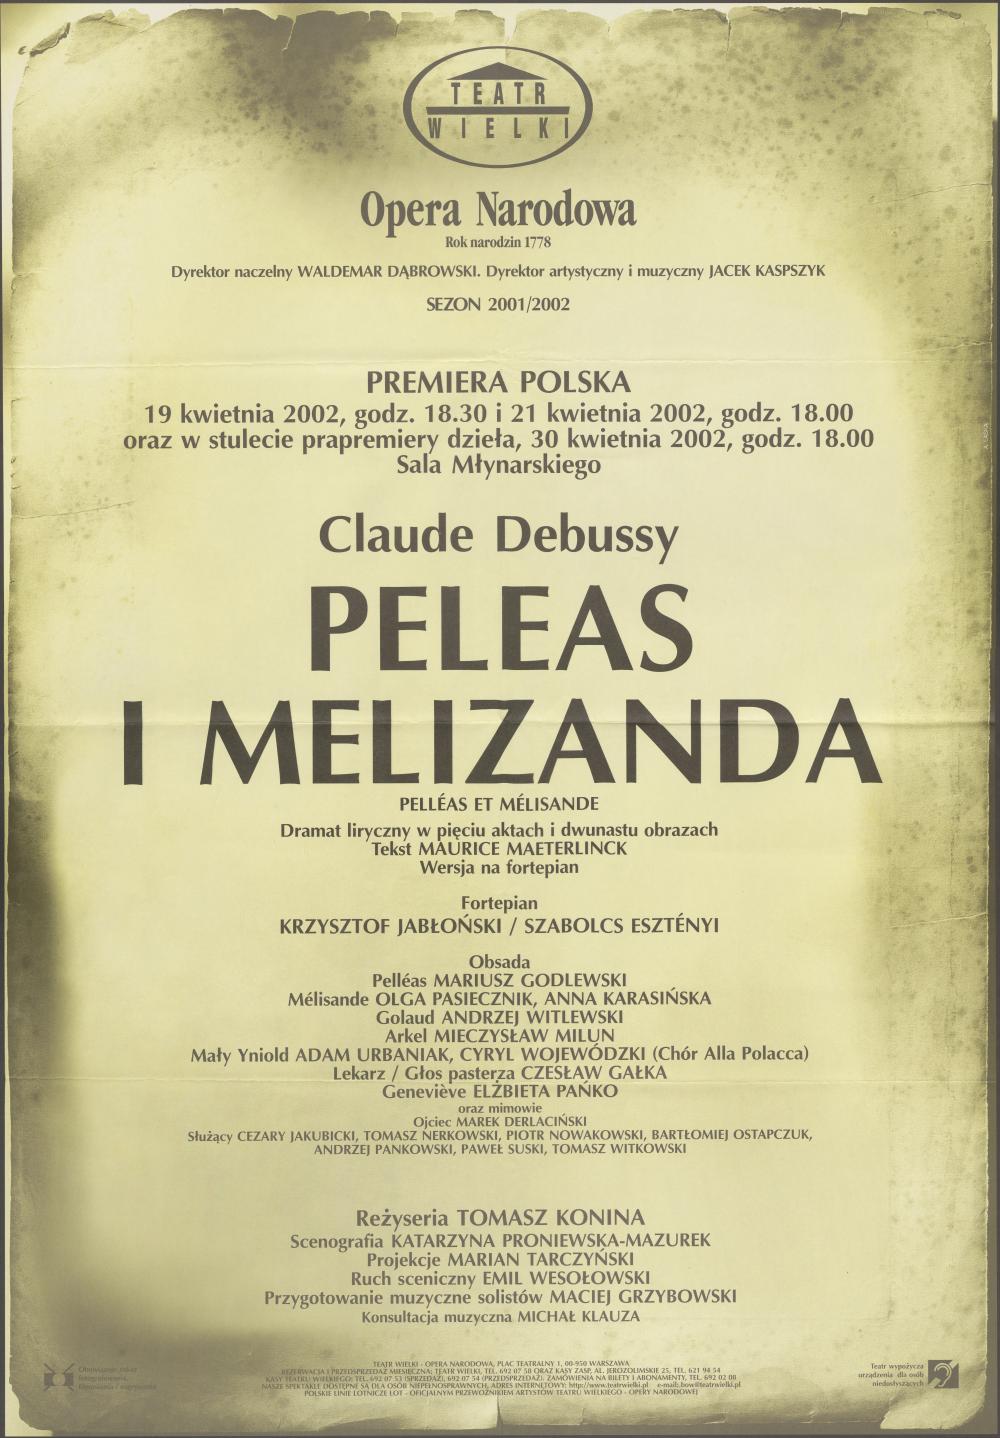 Afisz premiery polskiej „Peleas i Melizanda” Claude Debussy 19-04-2002, 21-04-2002 oraz w stulecie prapremiery dzieła 30-04-2002